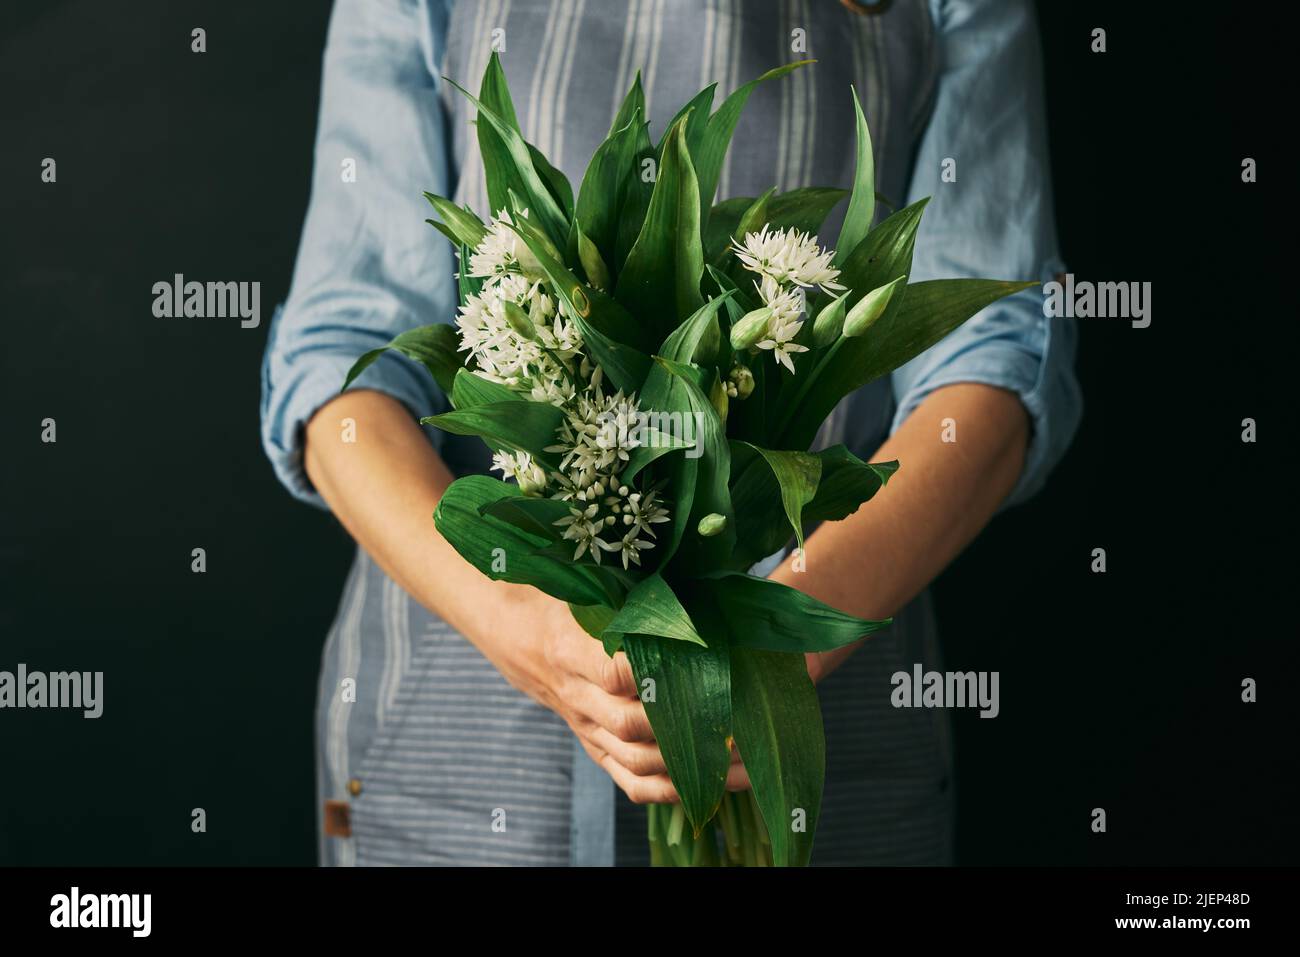 Coltivare anonima cuoca femminile in grembiule che tiene un mucchio di aglio selvatico con bulbi bianchi e foglie verdi su sfondo nero Foto Stock